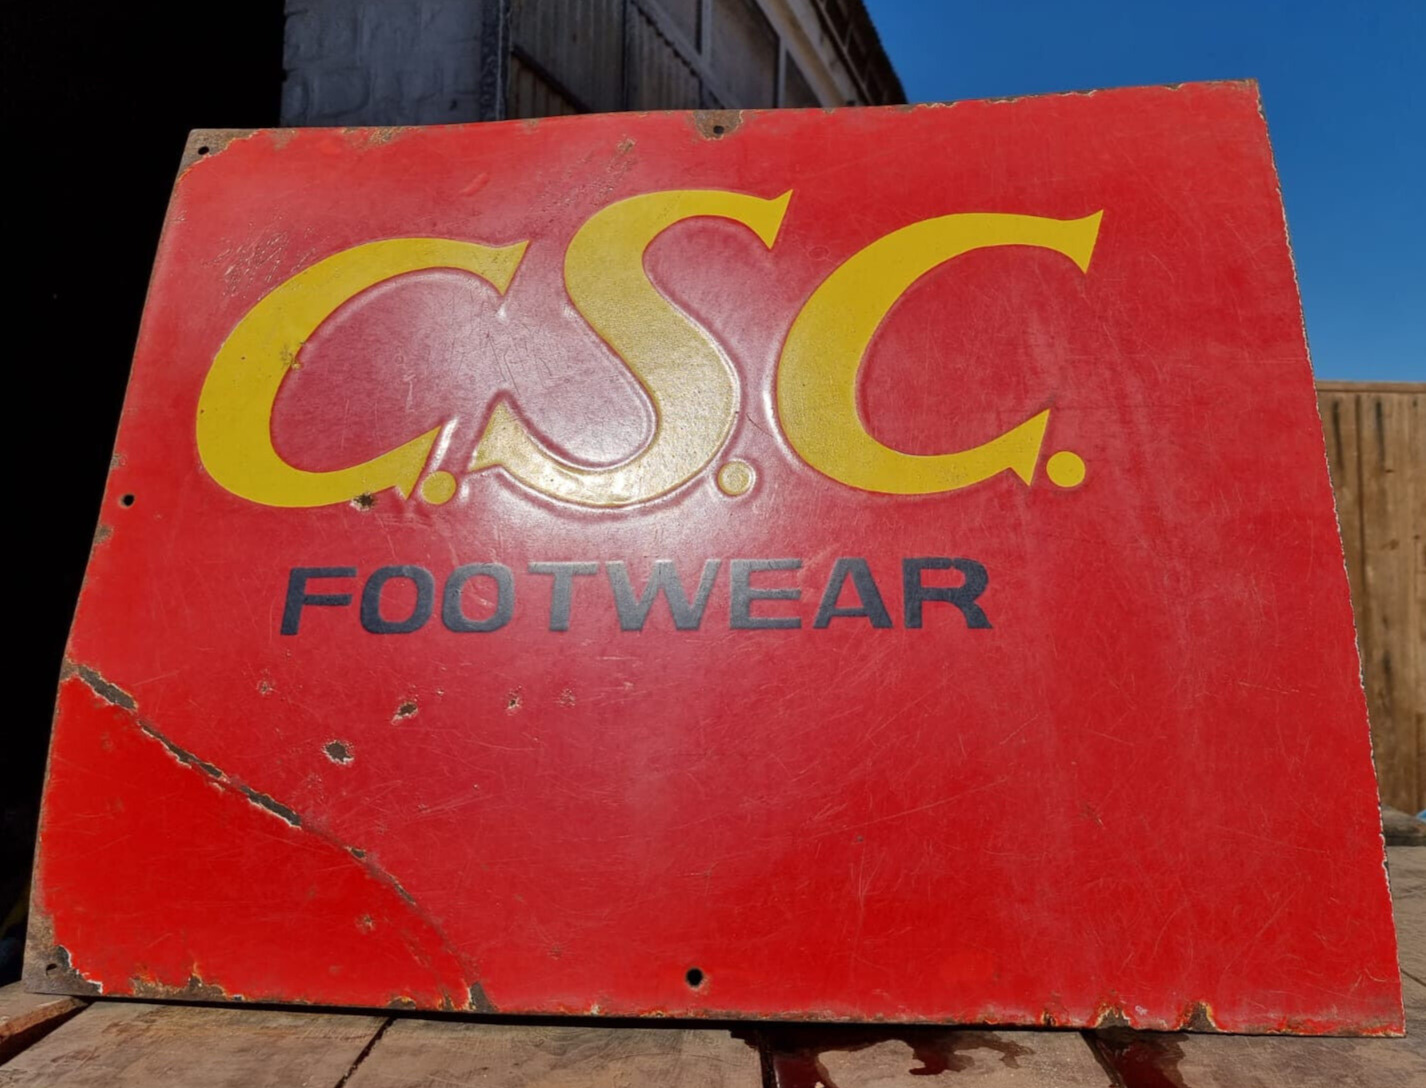 Vintage Old Antique Rare C.S.C. Footwear Adv. Porcelain Enamel Sign Board